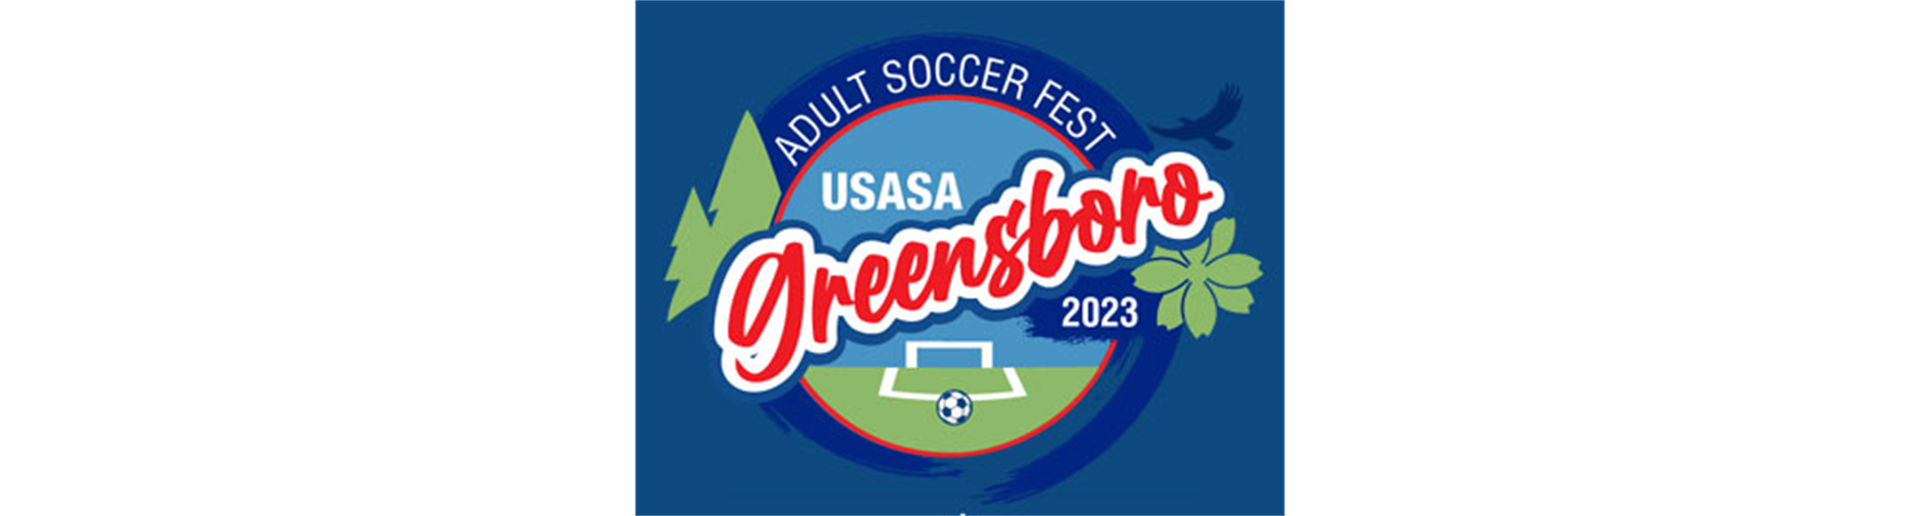 USASA Adult Soccer Fest * July 12 - 16